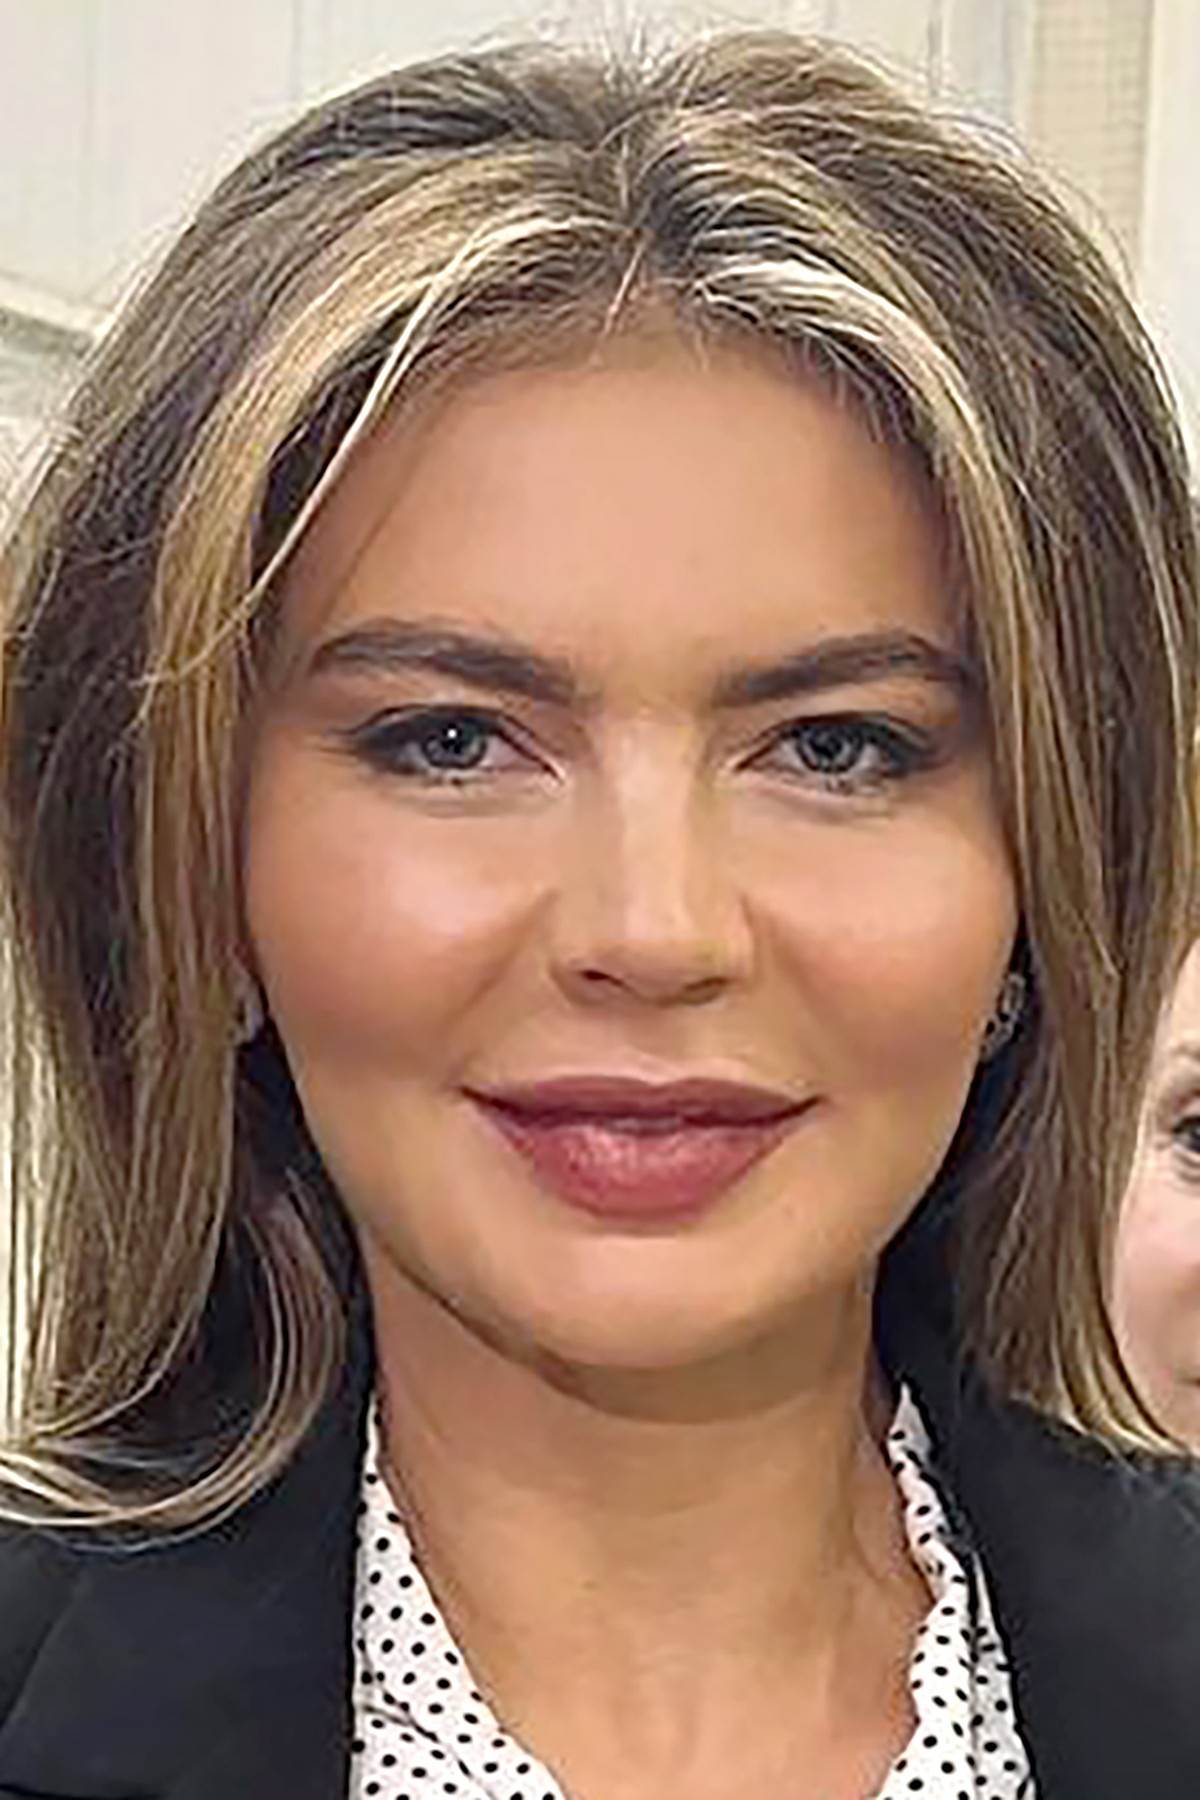  Alina Kabajeva iznenadila svojim plastičnim izgledom lica. 